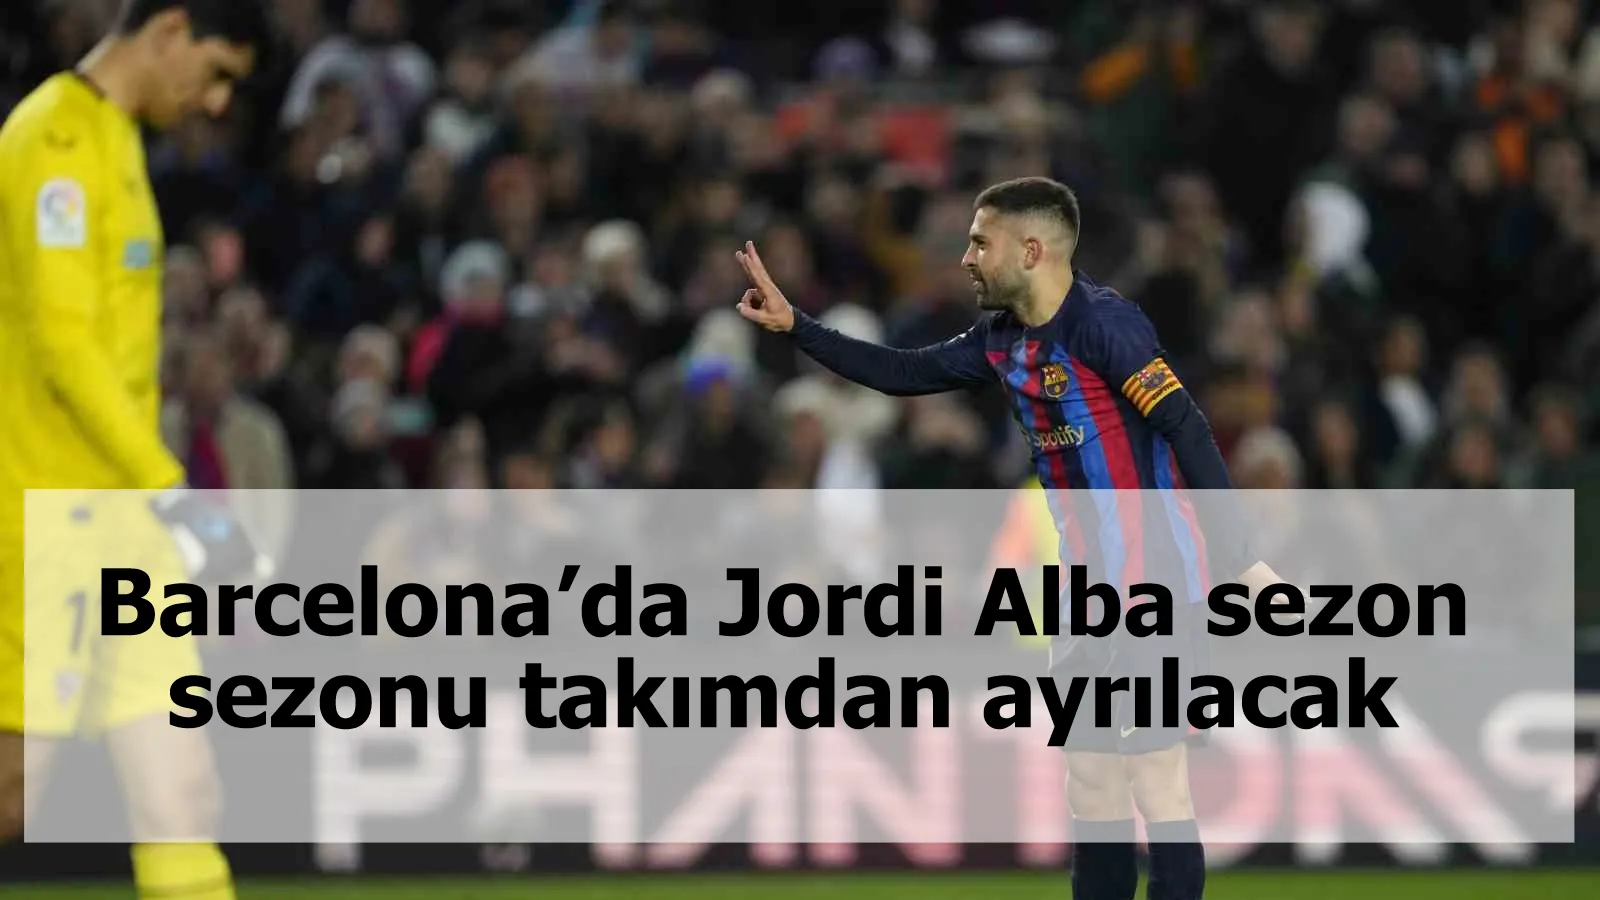 Barcelona’da Jordi Alba sezon sezonu takımdan ayrılacak